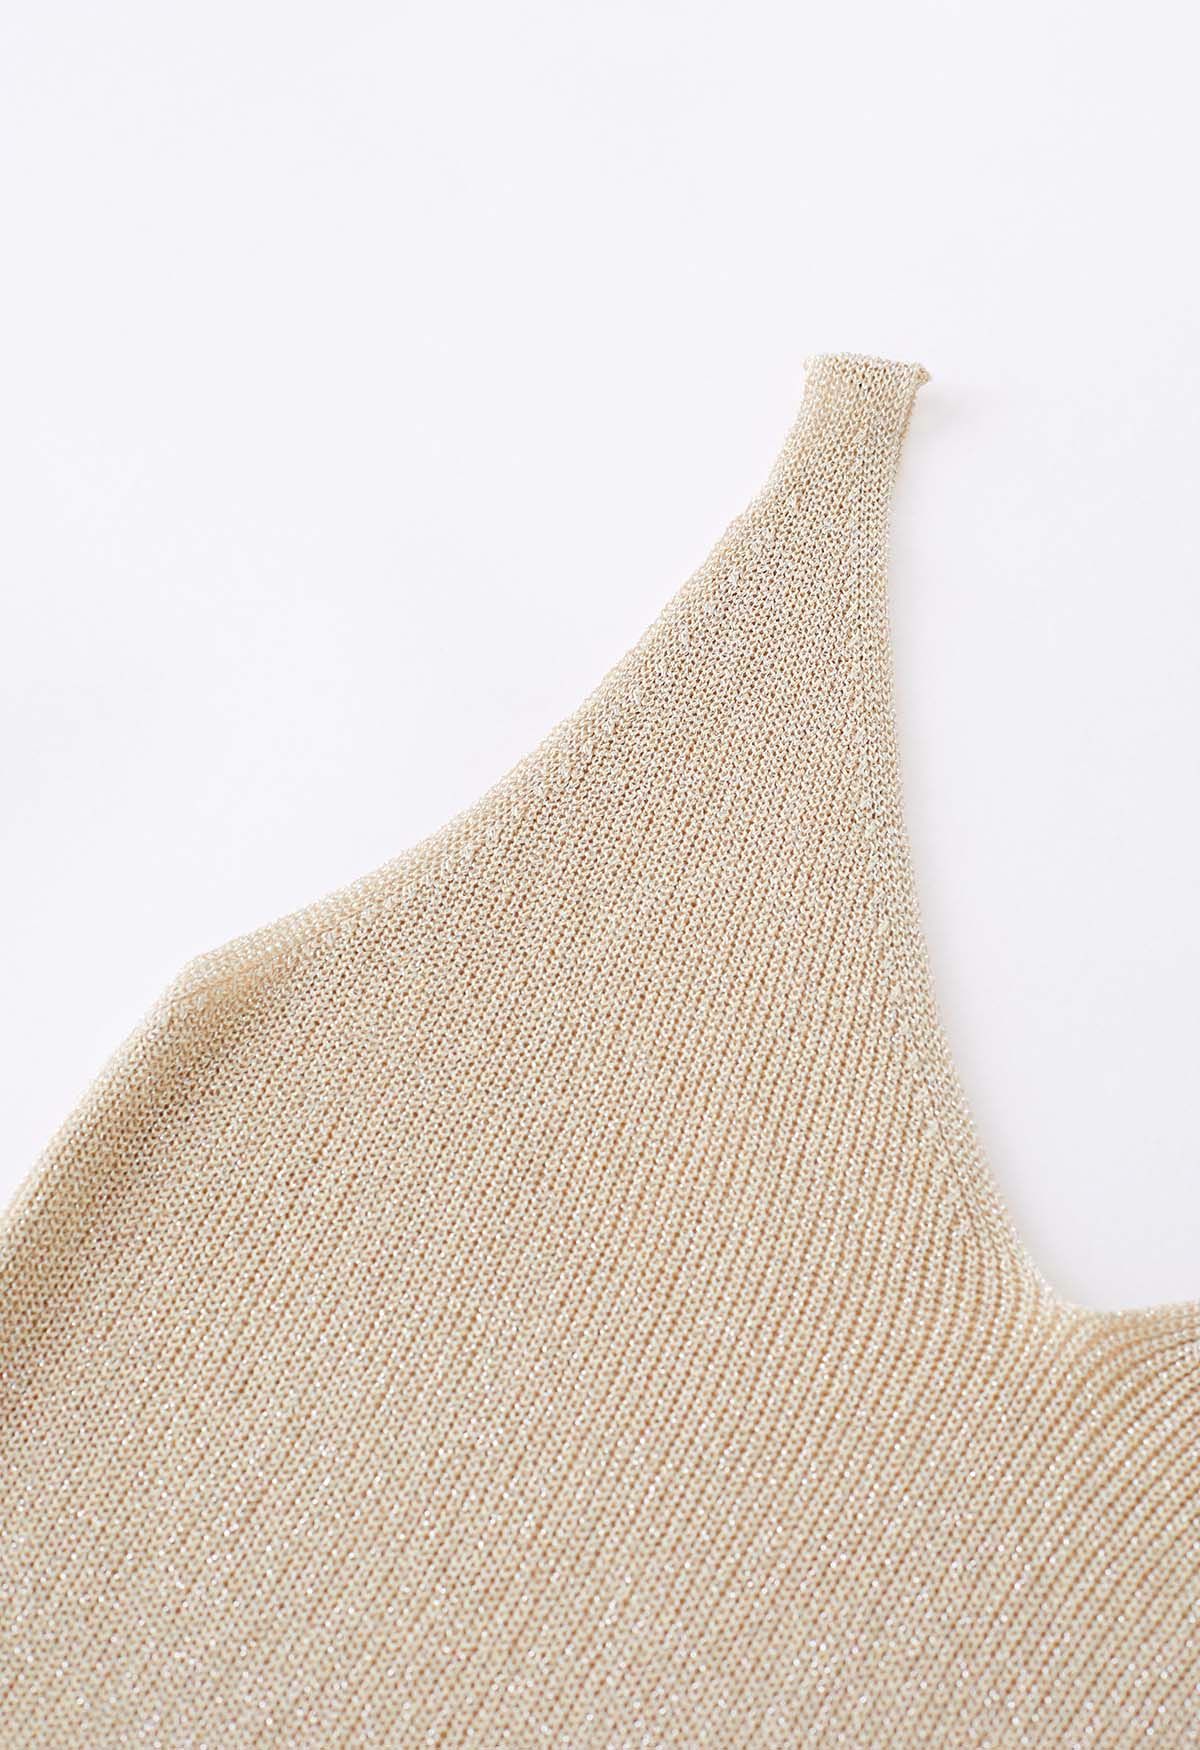 V-Neck Shimmer Knit Tank Top in Light Tan